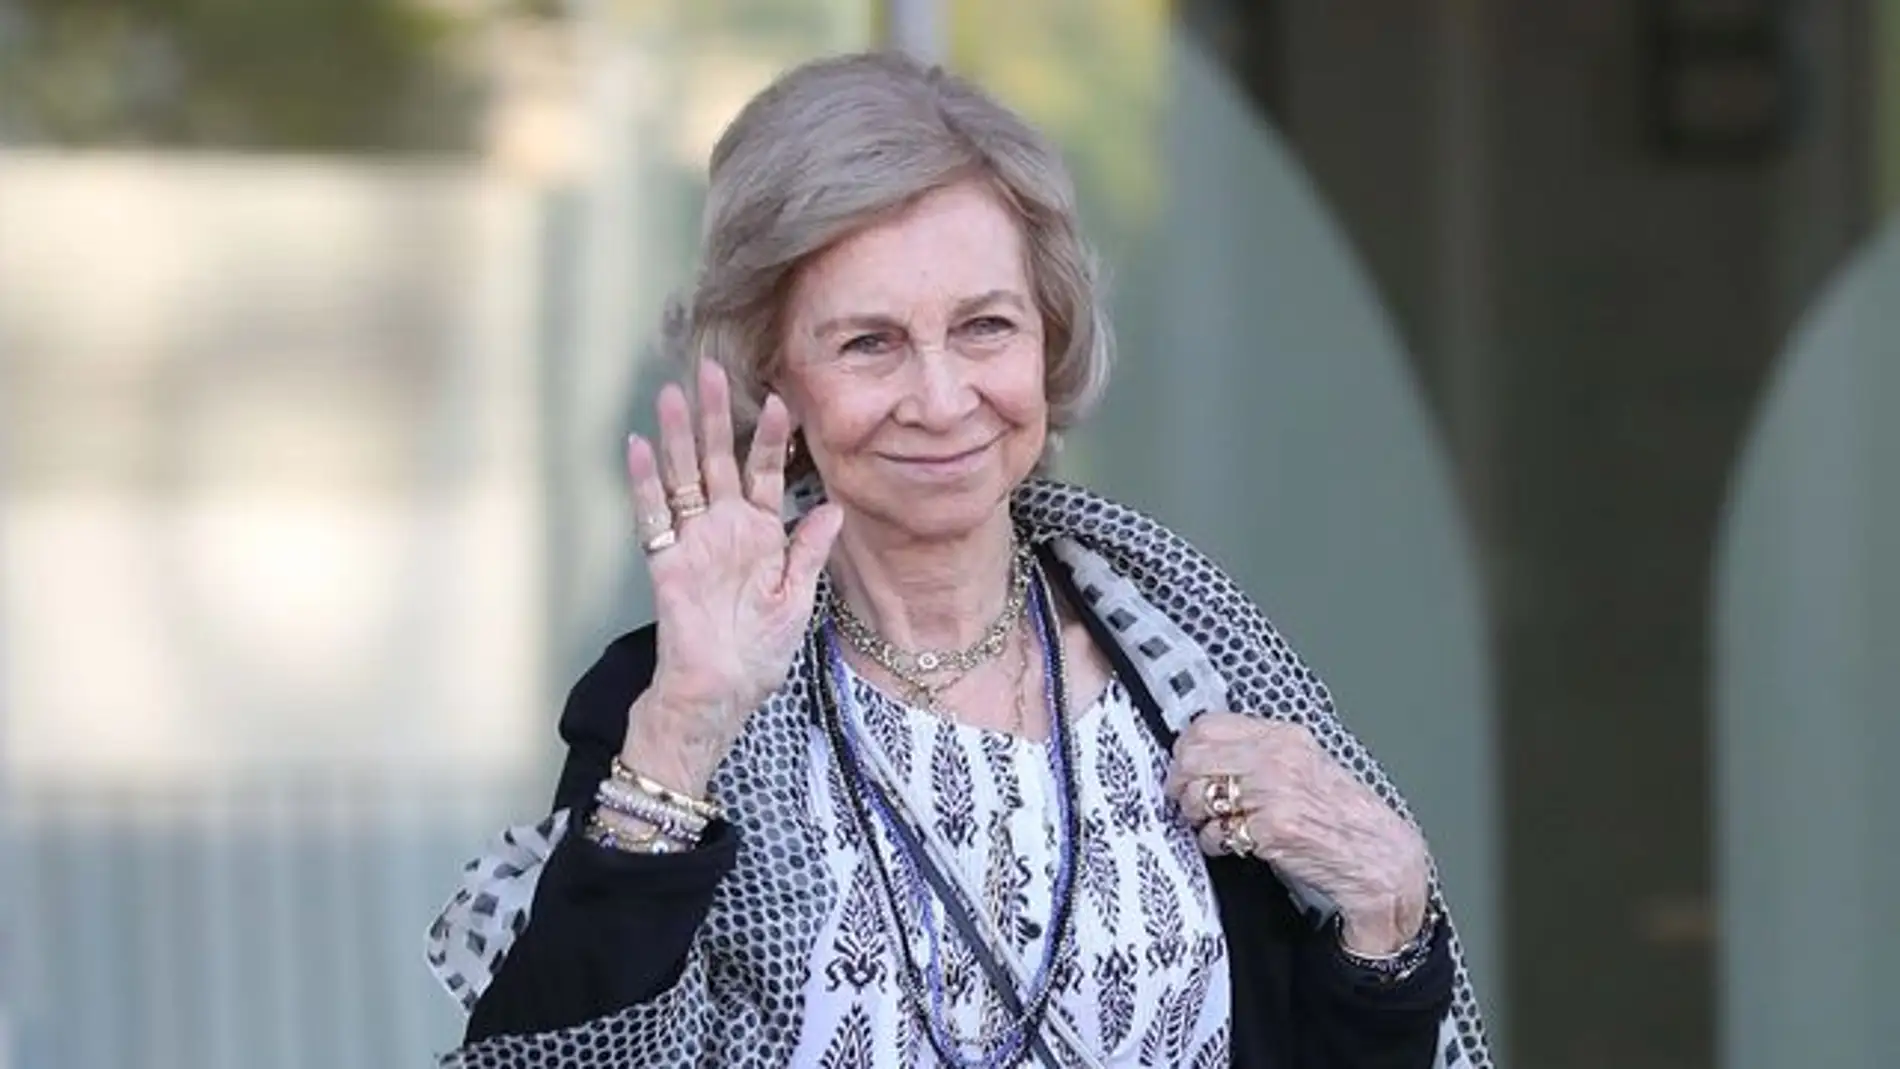 La Reina Sofía visitará el Banco de Alimentos de Badajoz el 1 de Diciembre coincidiendo con el 25 aniversario de la entidad